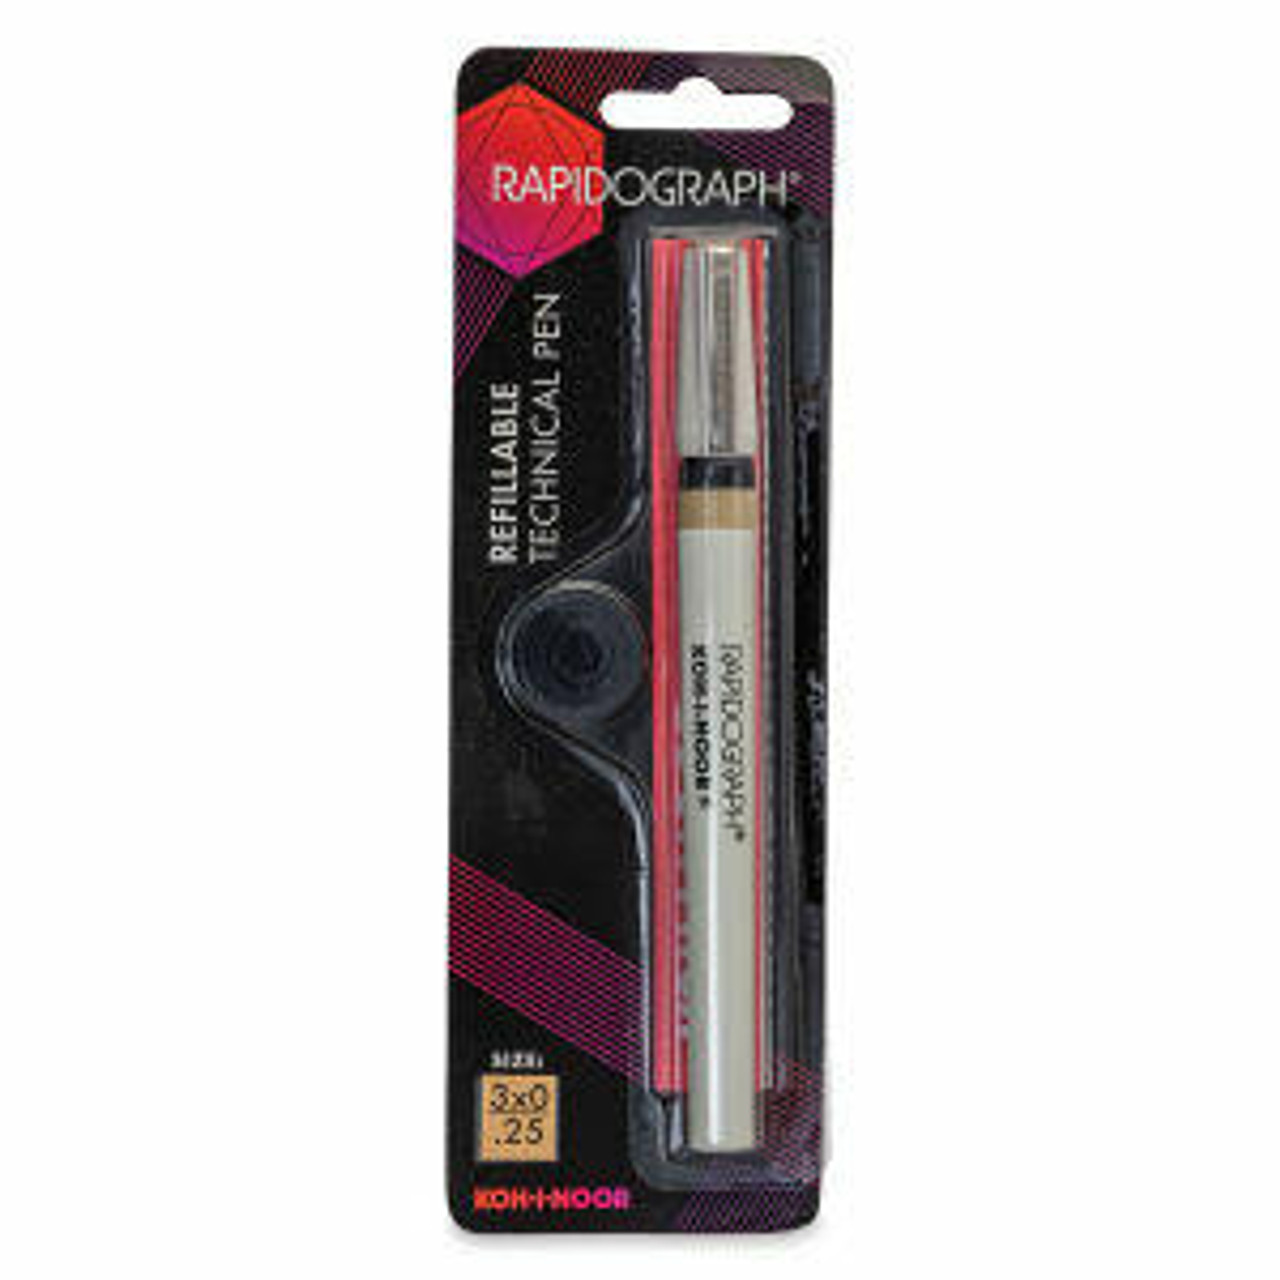 KOH-I-NOOR Rapidograph 3165 - Technical pen - 0.25 mm